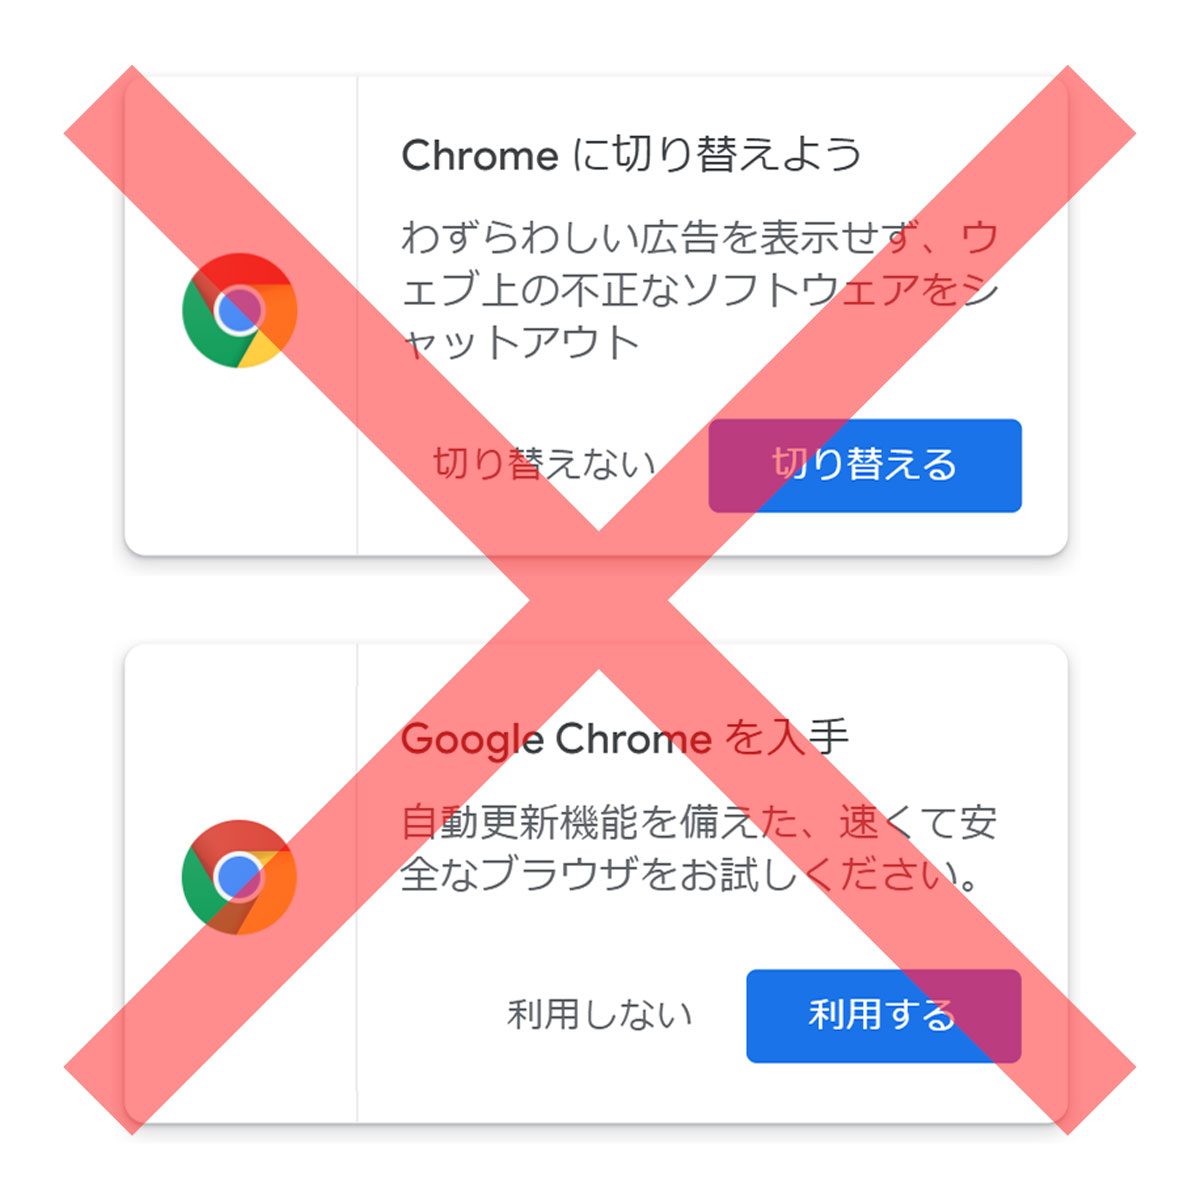 右上の「Chromeに切り替えよう」「Chromeを入手」を消す方法（拡張機能使用）